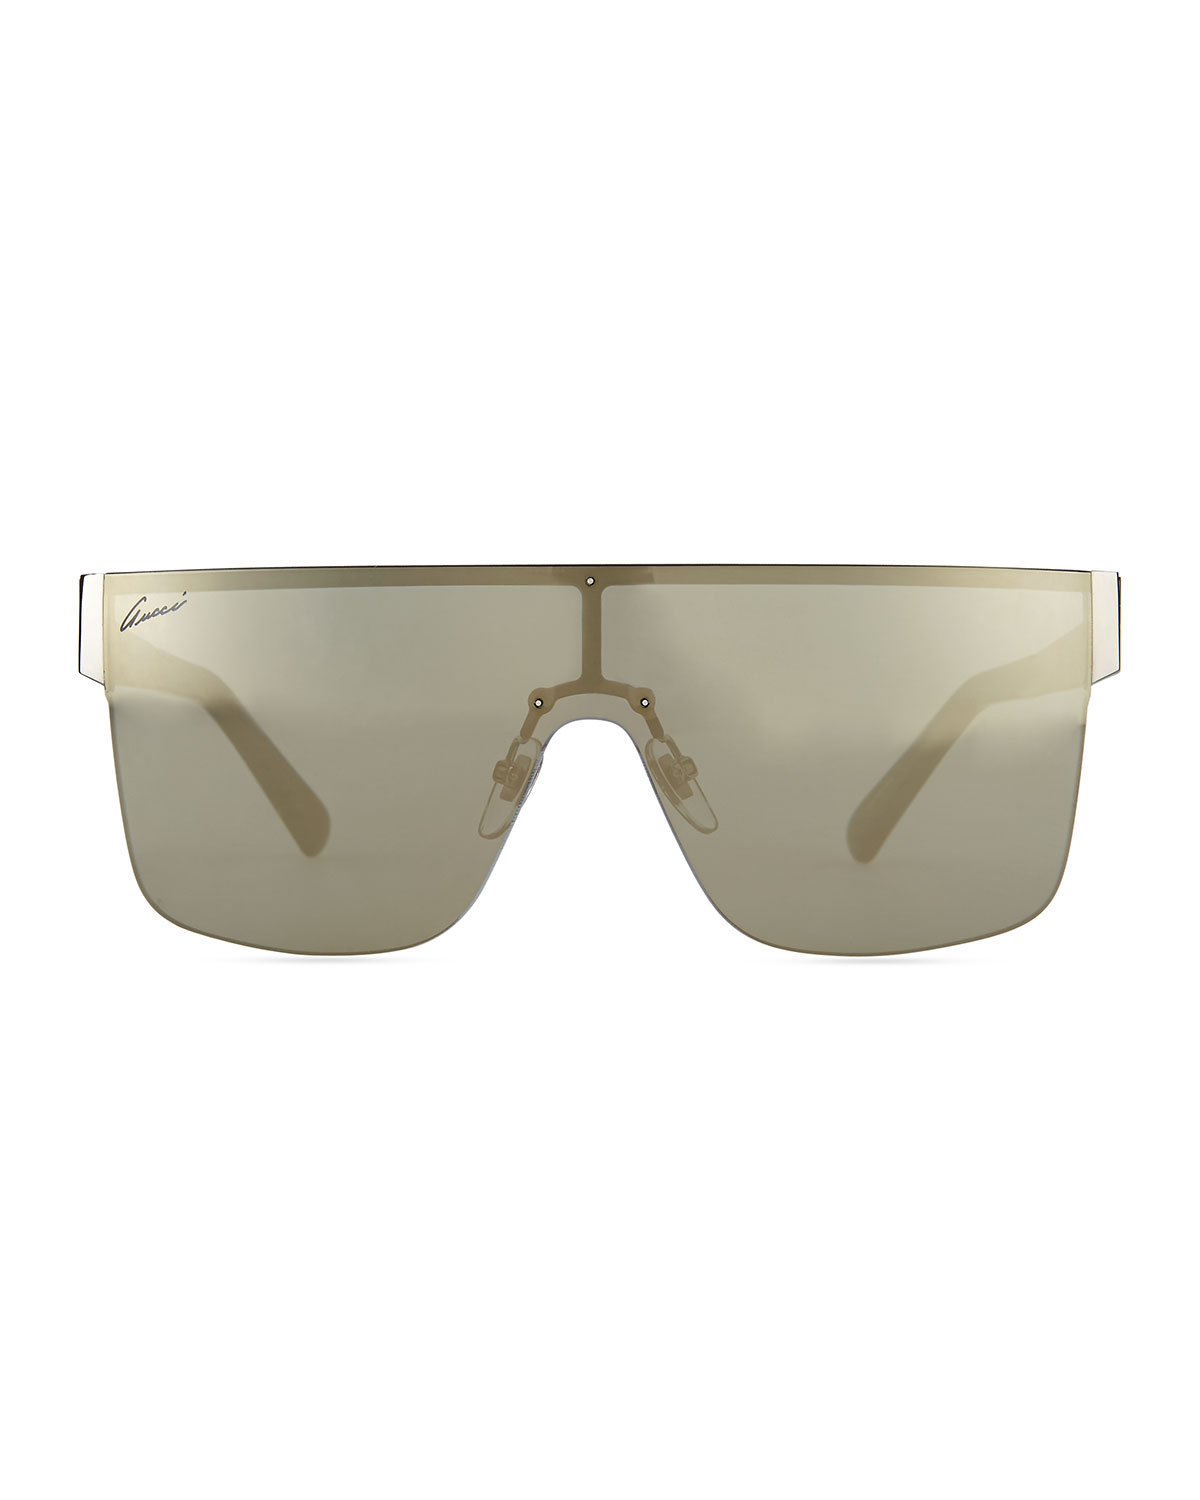 Lyst - Gucci Gg Logo Shield Mirror Sunglasses in Gray for Men